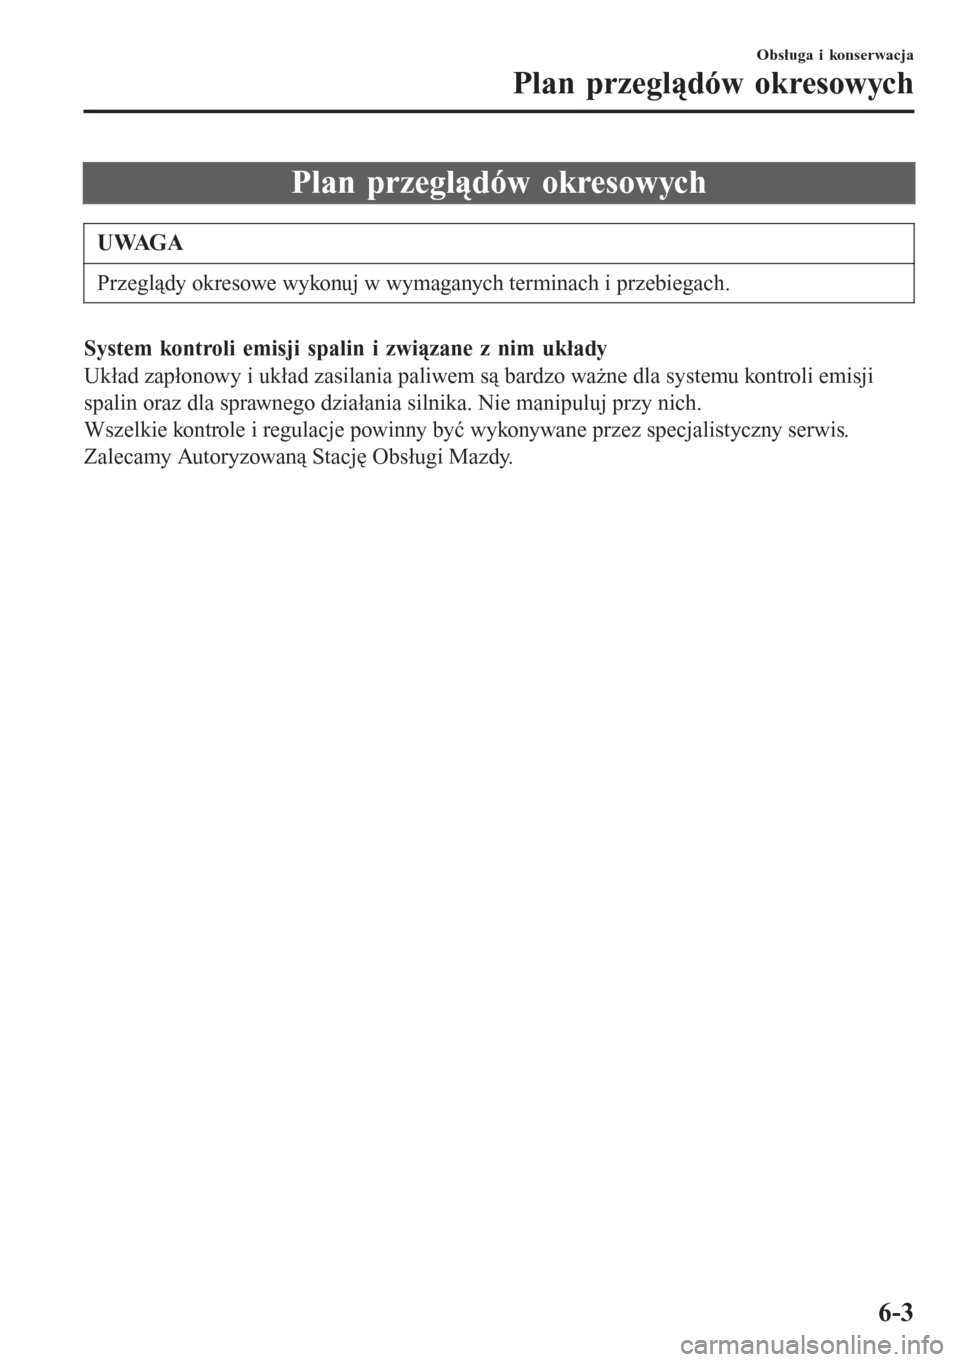 MAZDA MODEL CX-3 2016  Instrukcja Obsługi (in Polish) Plan przeglądów okresowych
UWAGA
Przeglądy okresowe wykonuj w wymaganych terminach i przebiegach.
System kontroli emisji spalin i związane z nim układy
Układ zapłonowy i układ zasilania paliwe